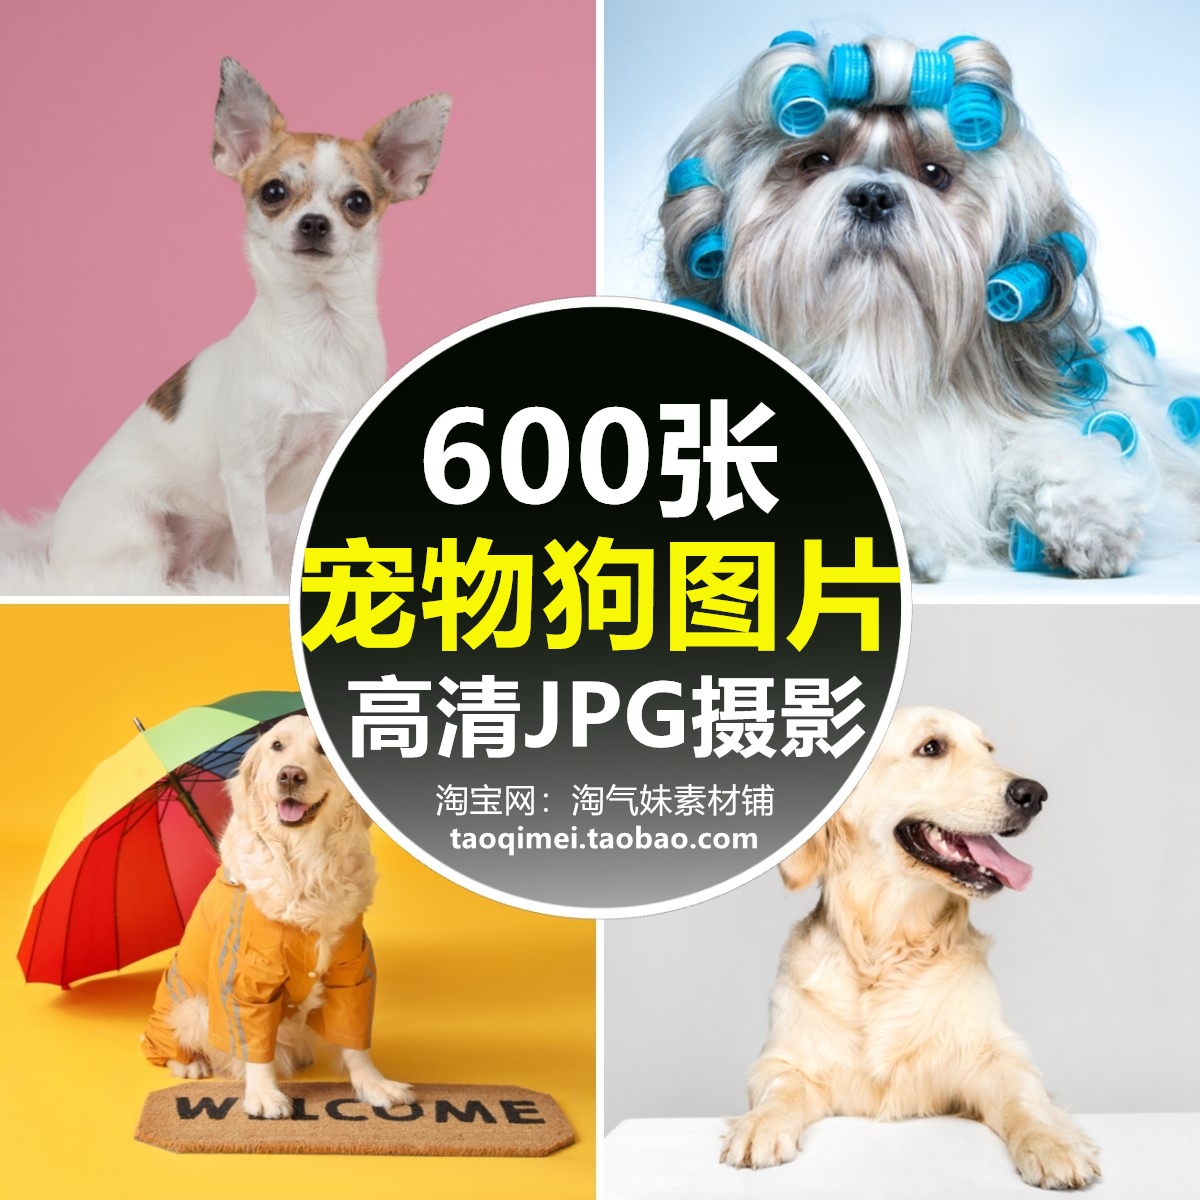 高清JPG宠物狗图片金毛泰迪萨摩柯基纳瑞萌宠名犬店宣传海报素材